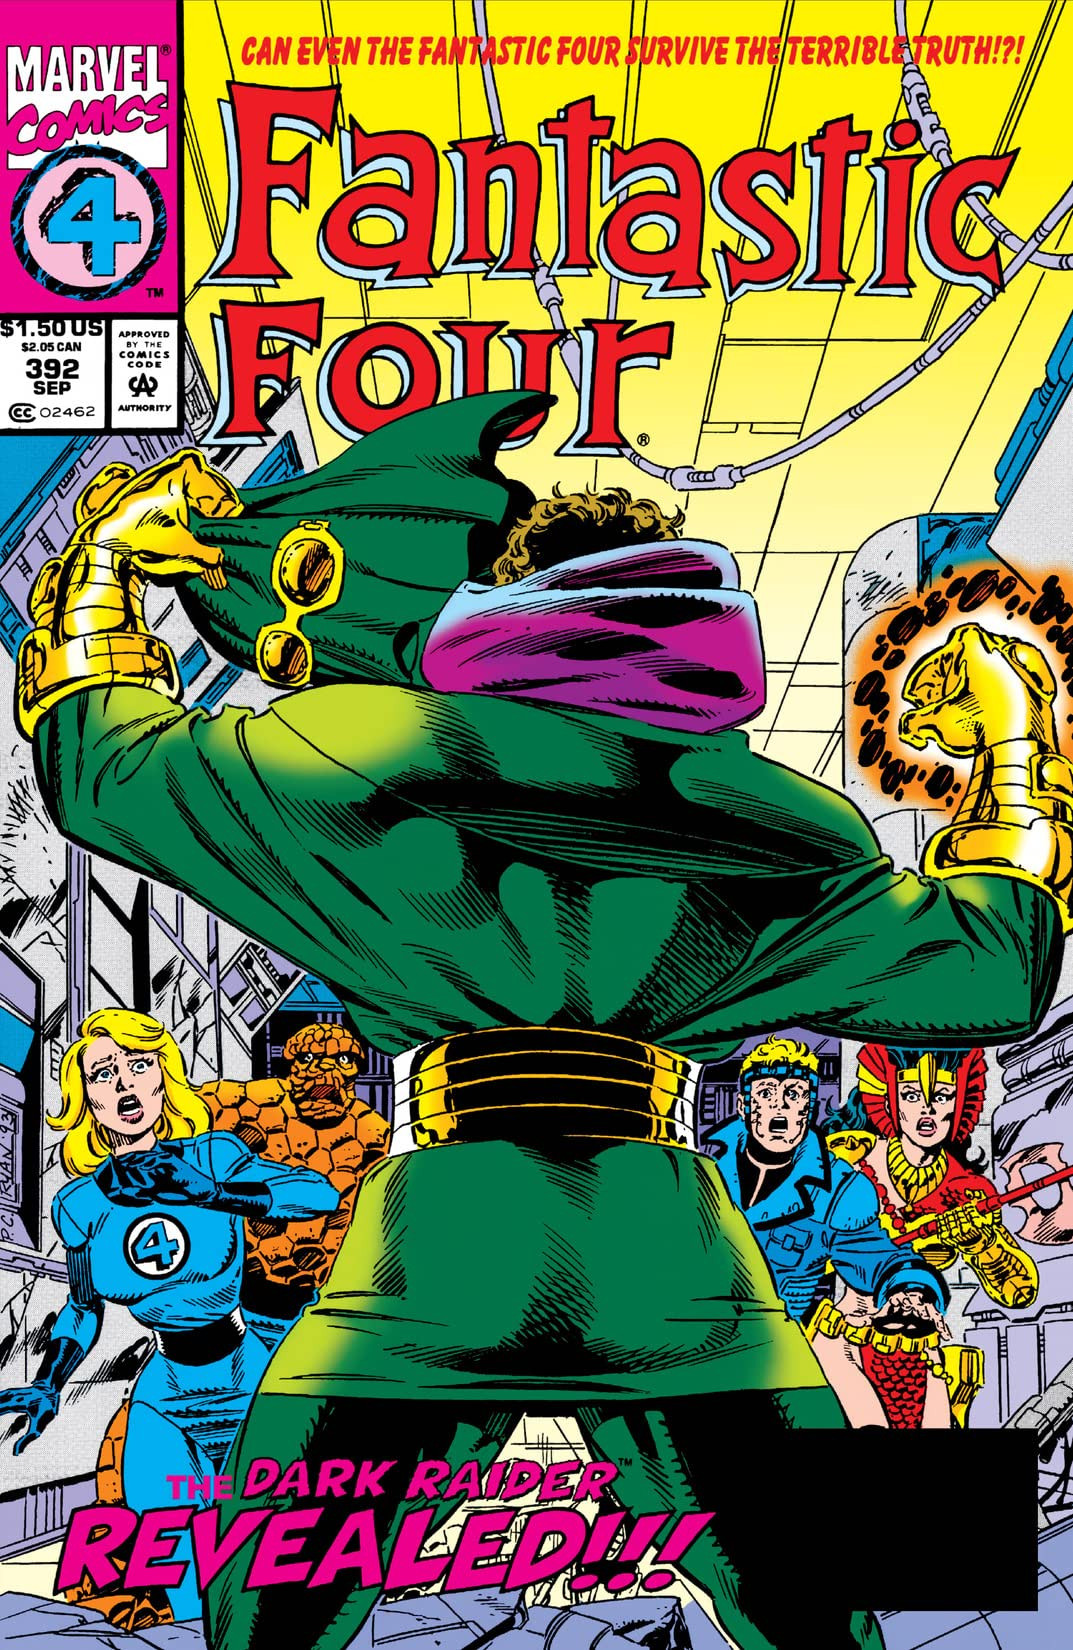 1961-2012 1 #392 Fantastic Four Vol 